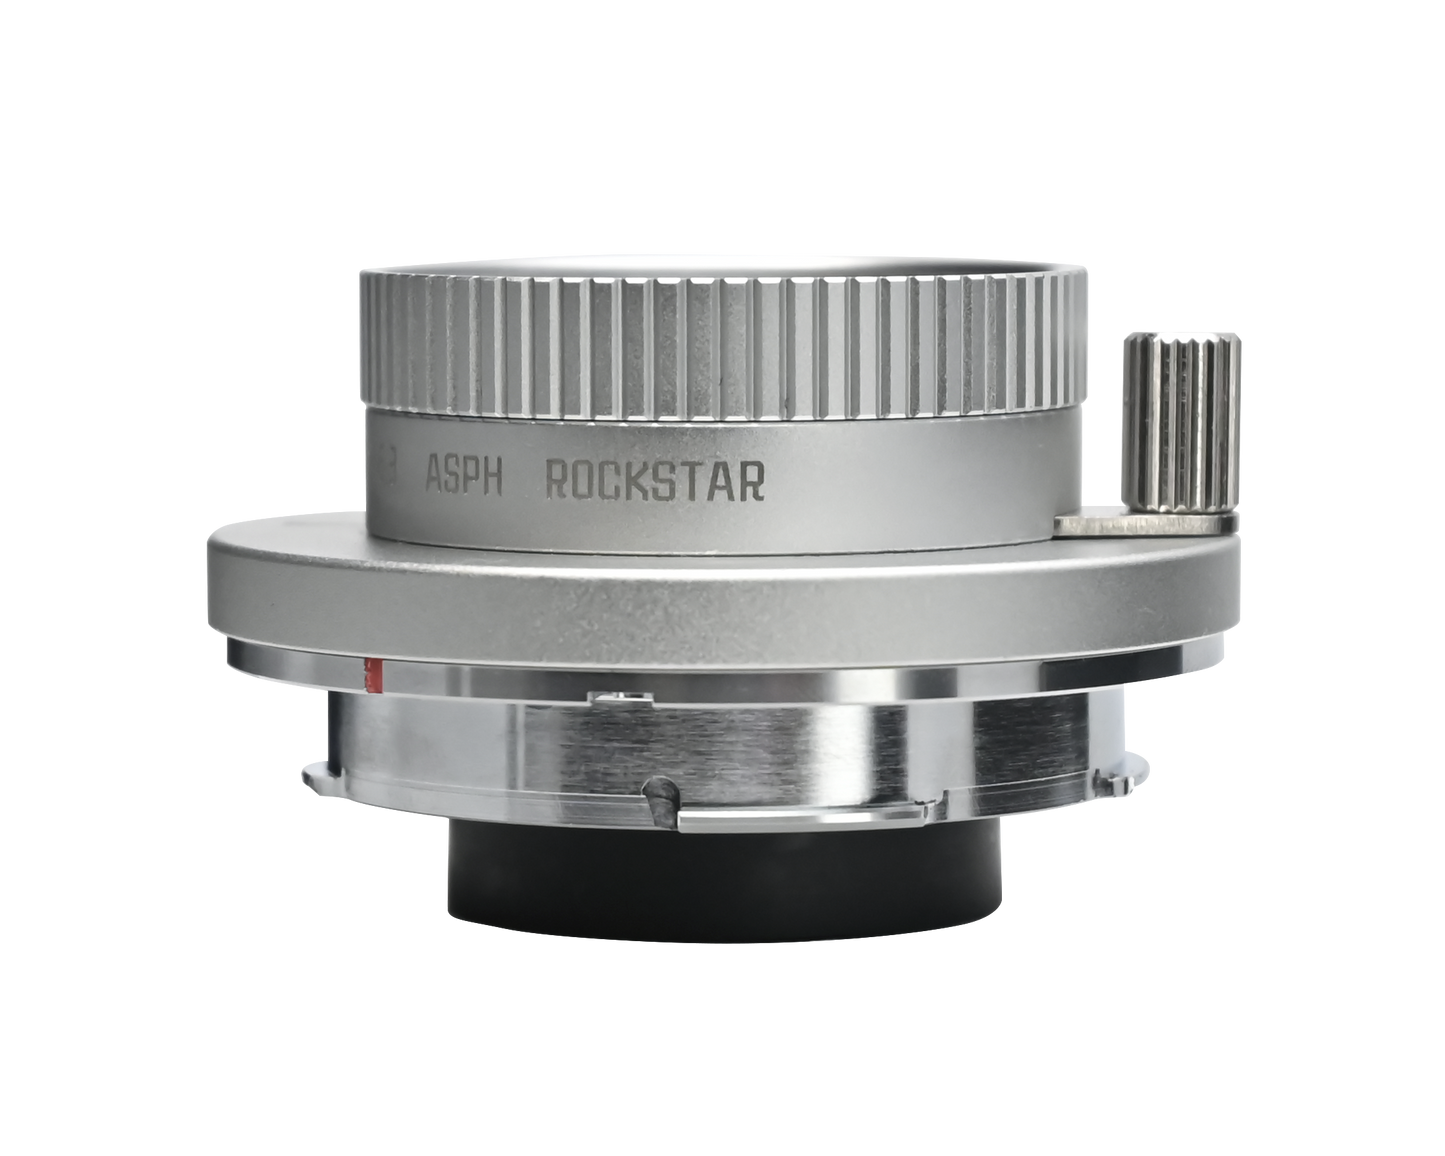 24mm F6.3 Full-frame Large Aperture lens for Leica M